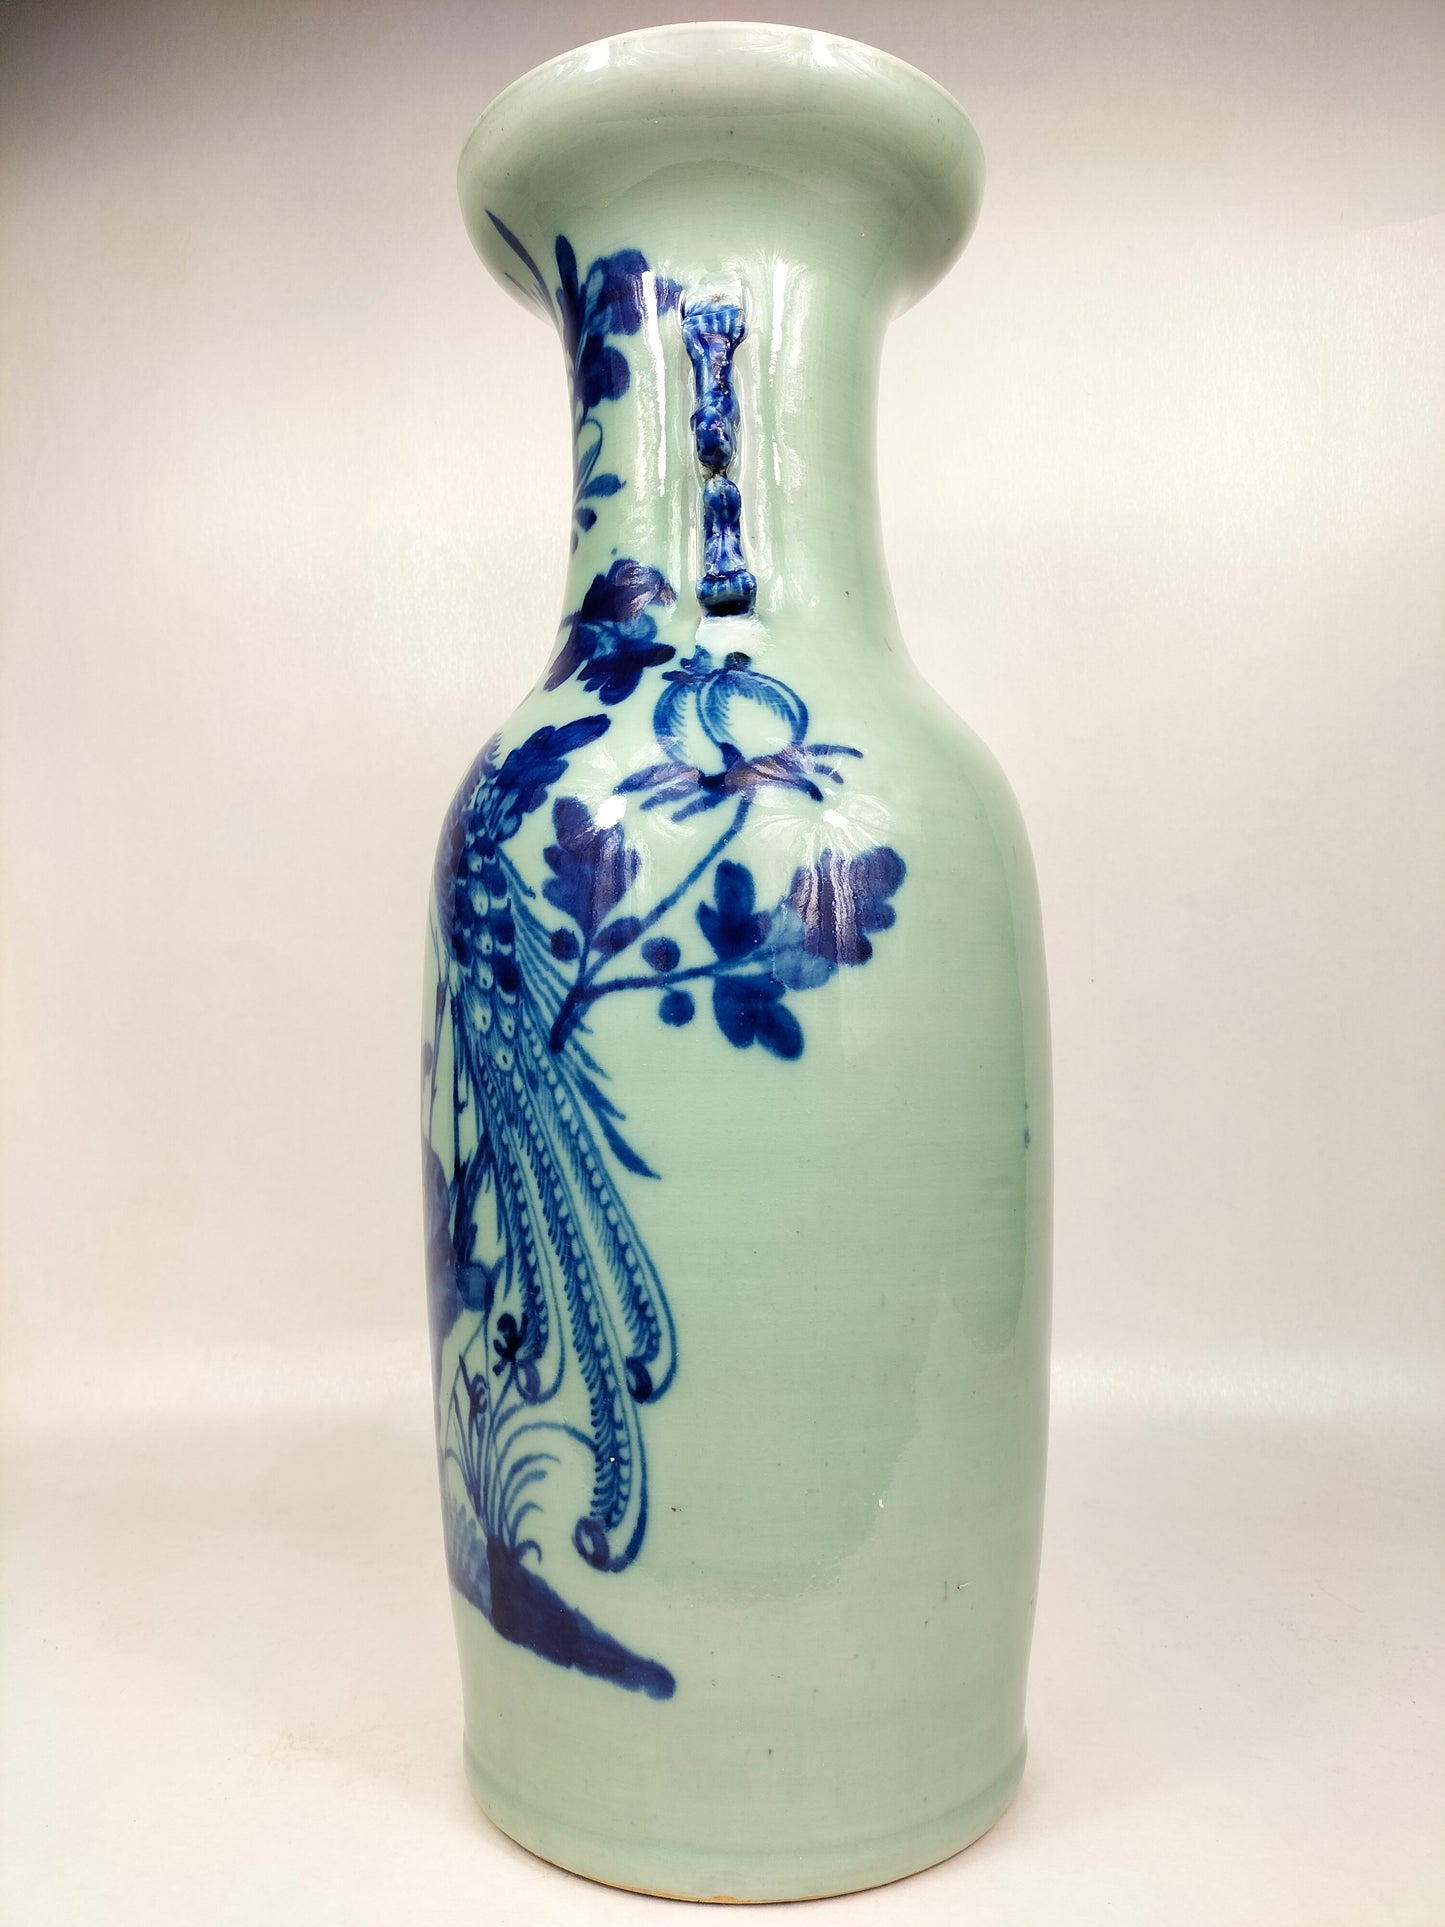 Grand vase chinois antique couleur céladon à décor d'oiseaux et de fleurs // Dynastie Qing - 19ème siècle